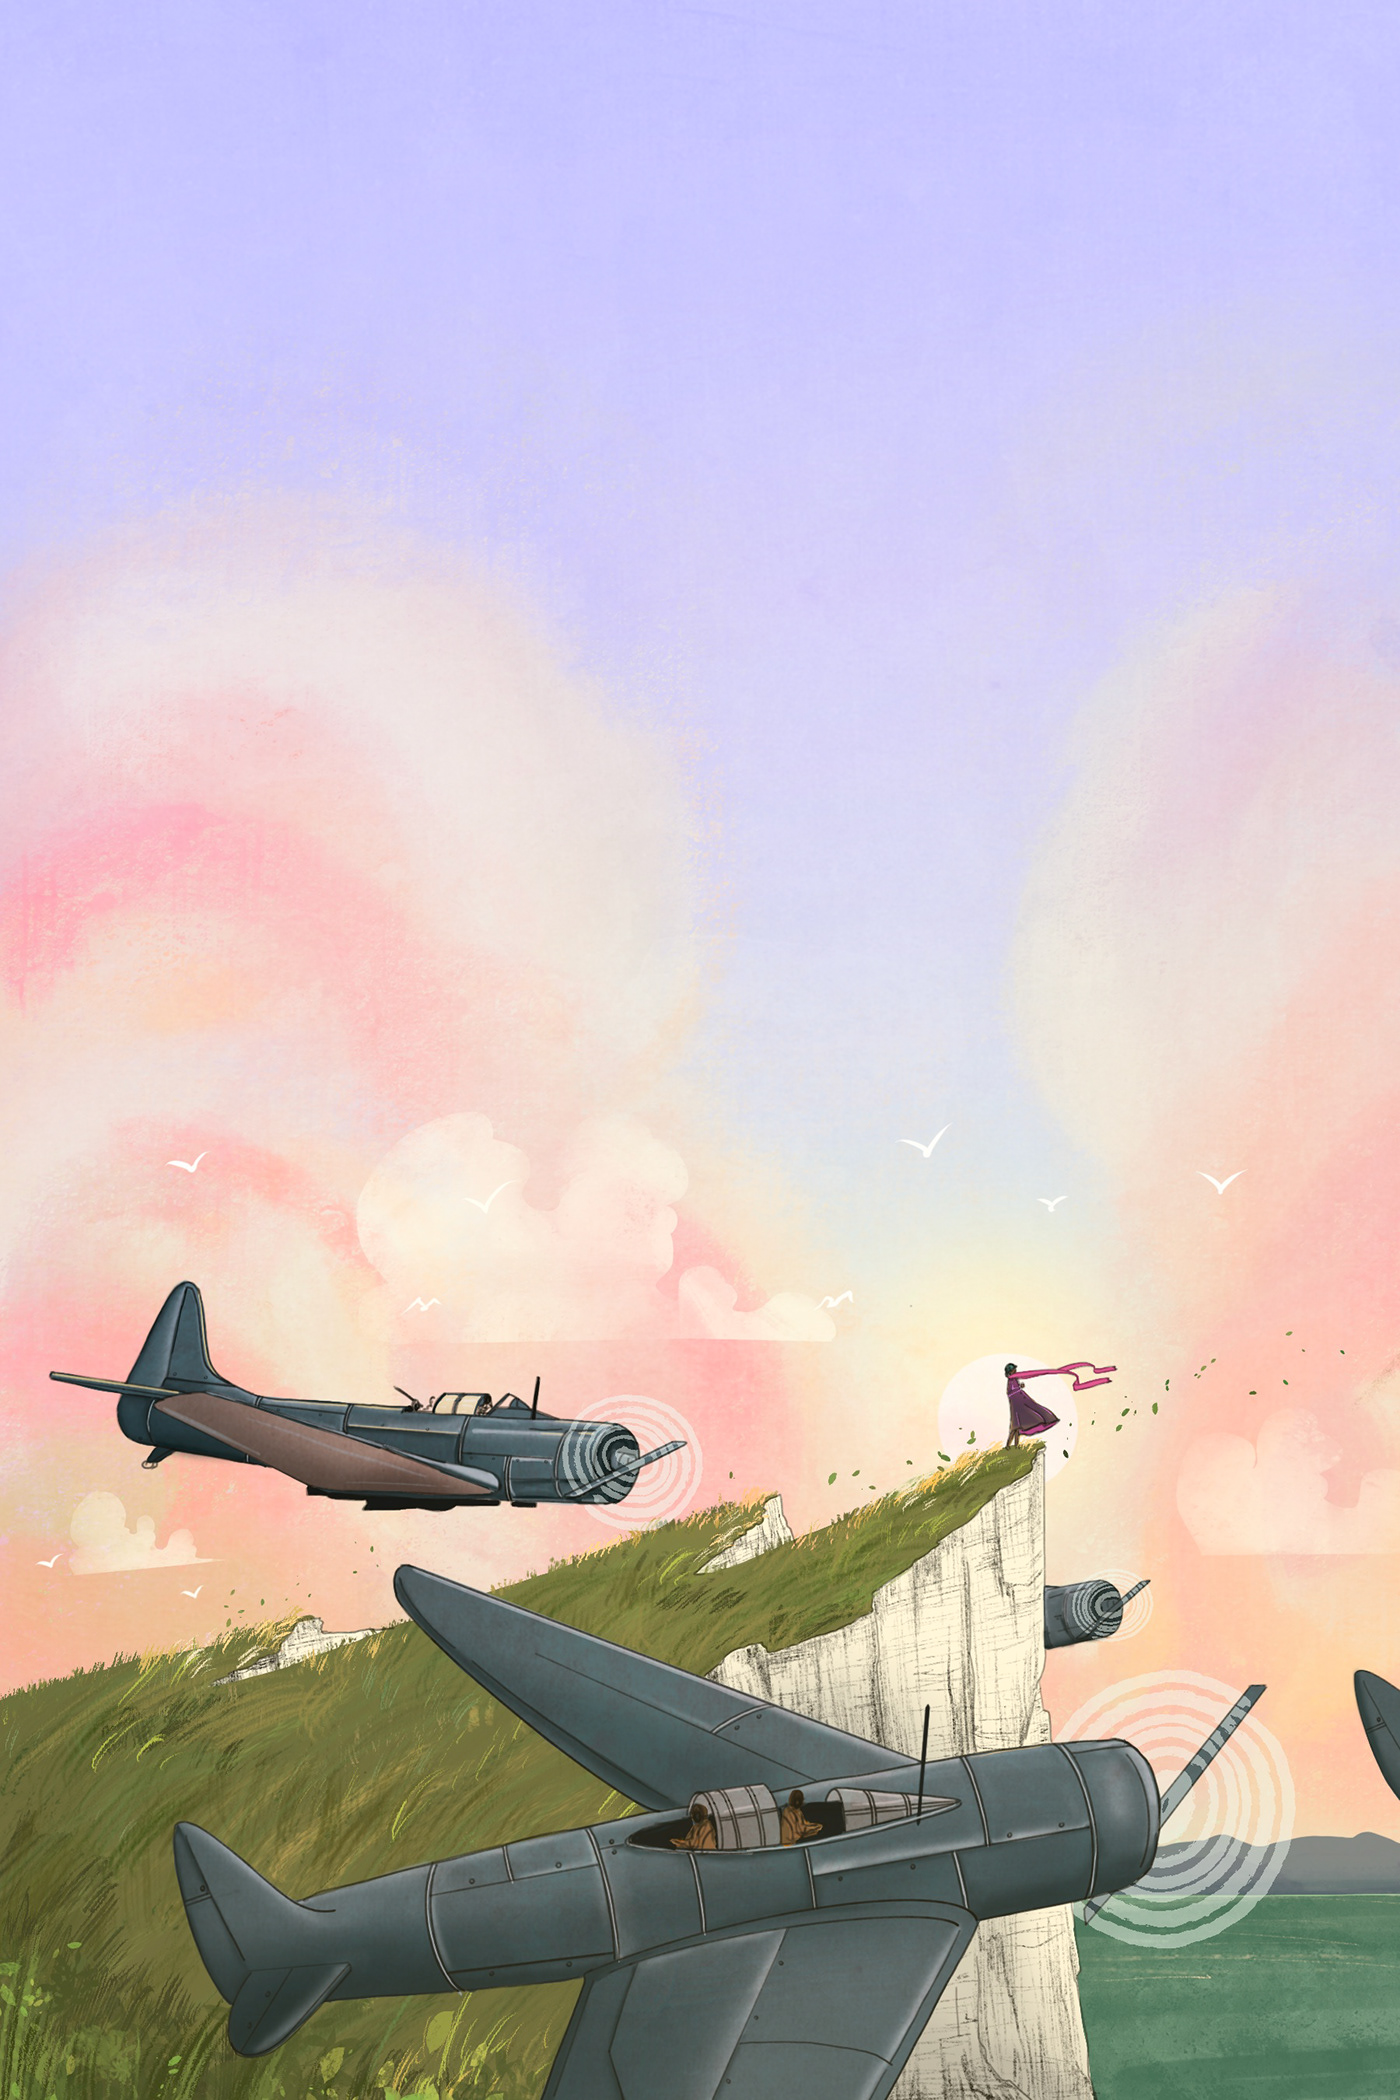 cliffs Daily Illustration flight Flying inktober Landscape planes prompt illustration wartime WWII